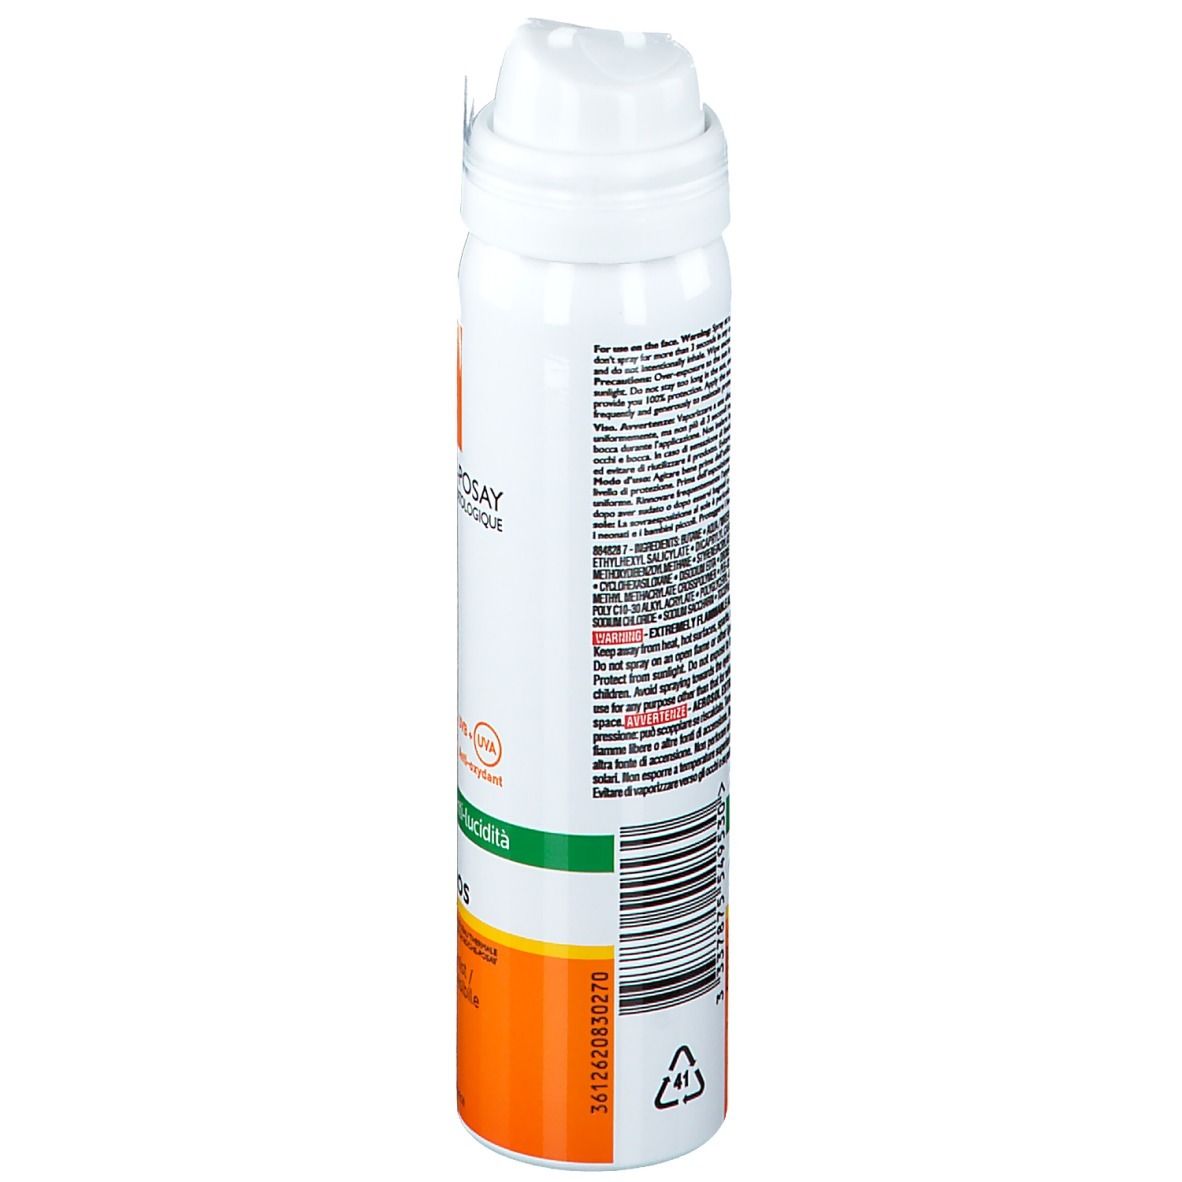 La Roche-Posay Anthelios Spray Crema Solare VisoInvisibile SPF50+ 75 m